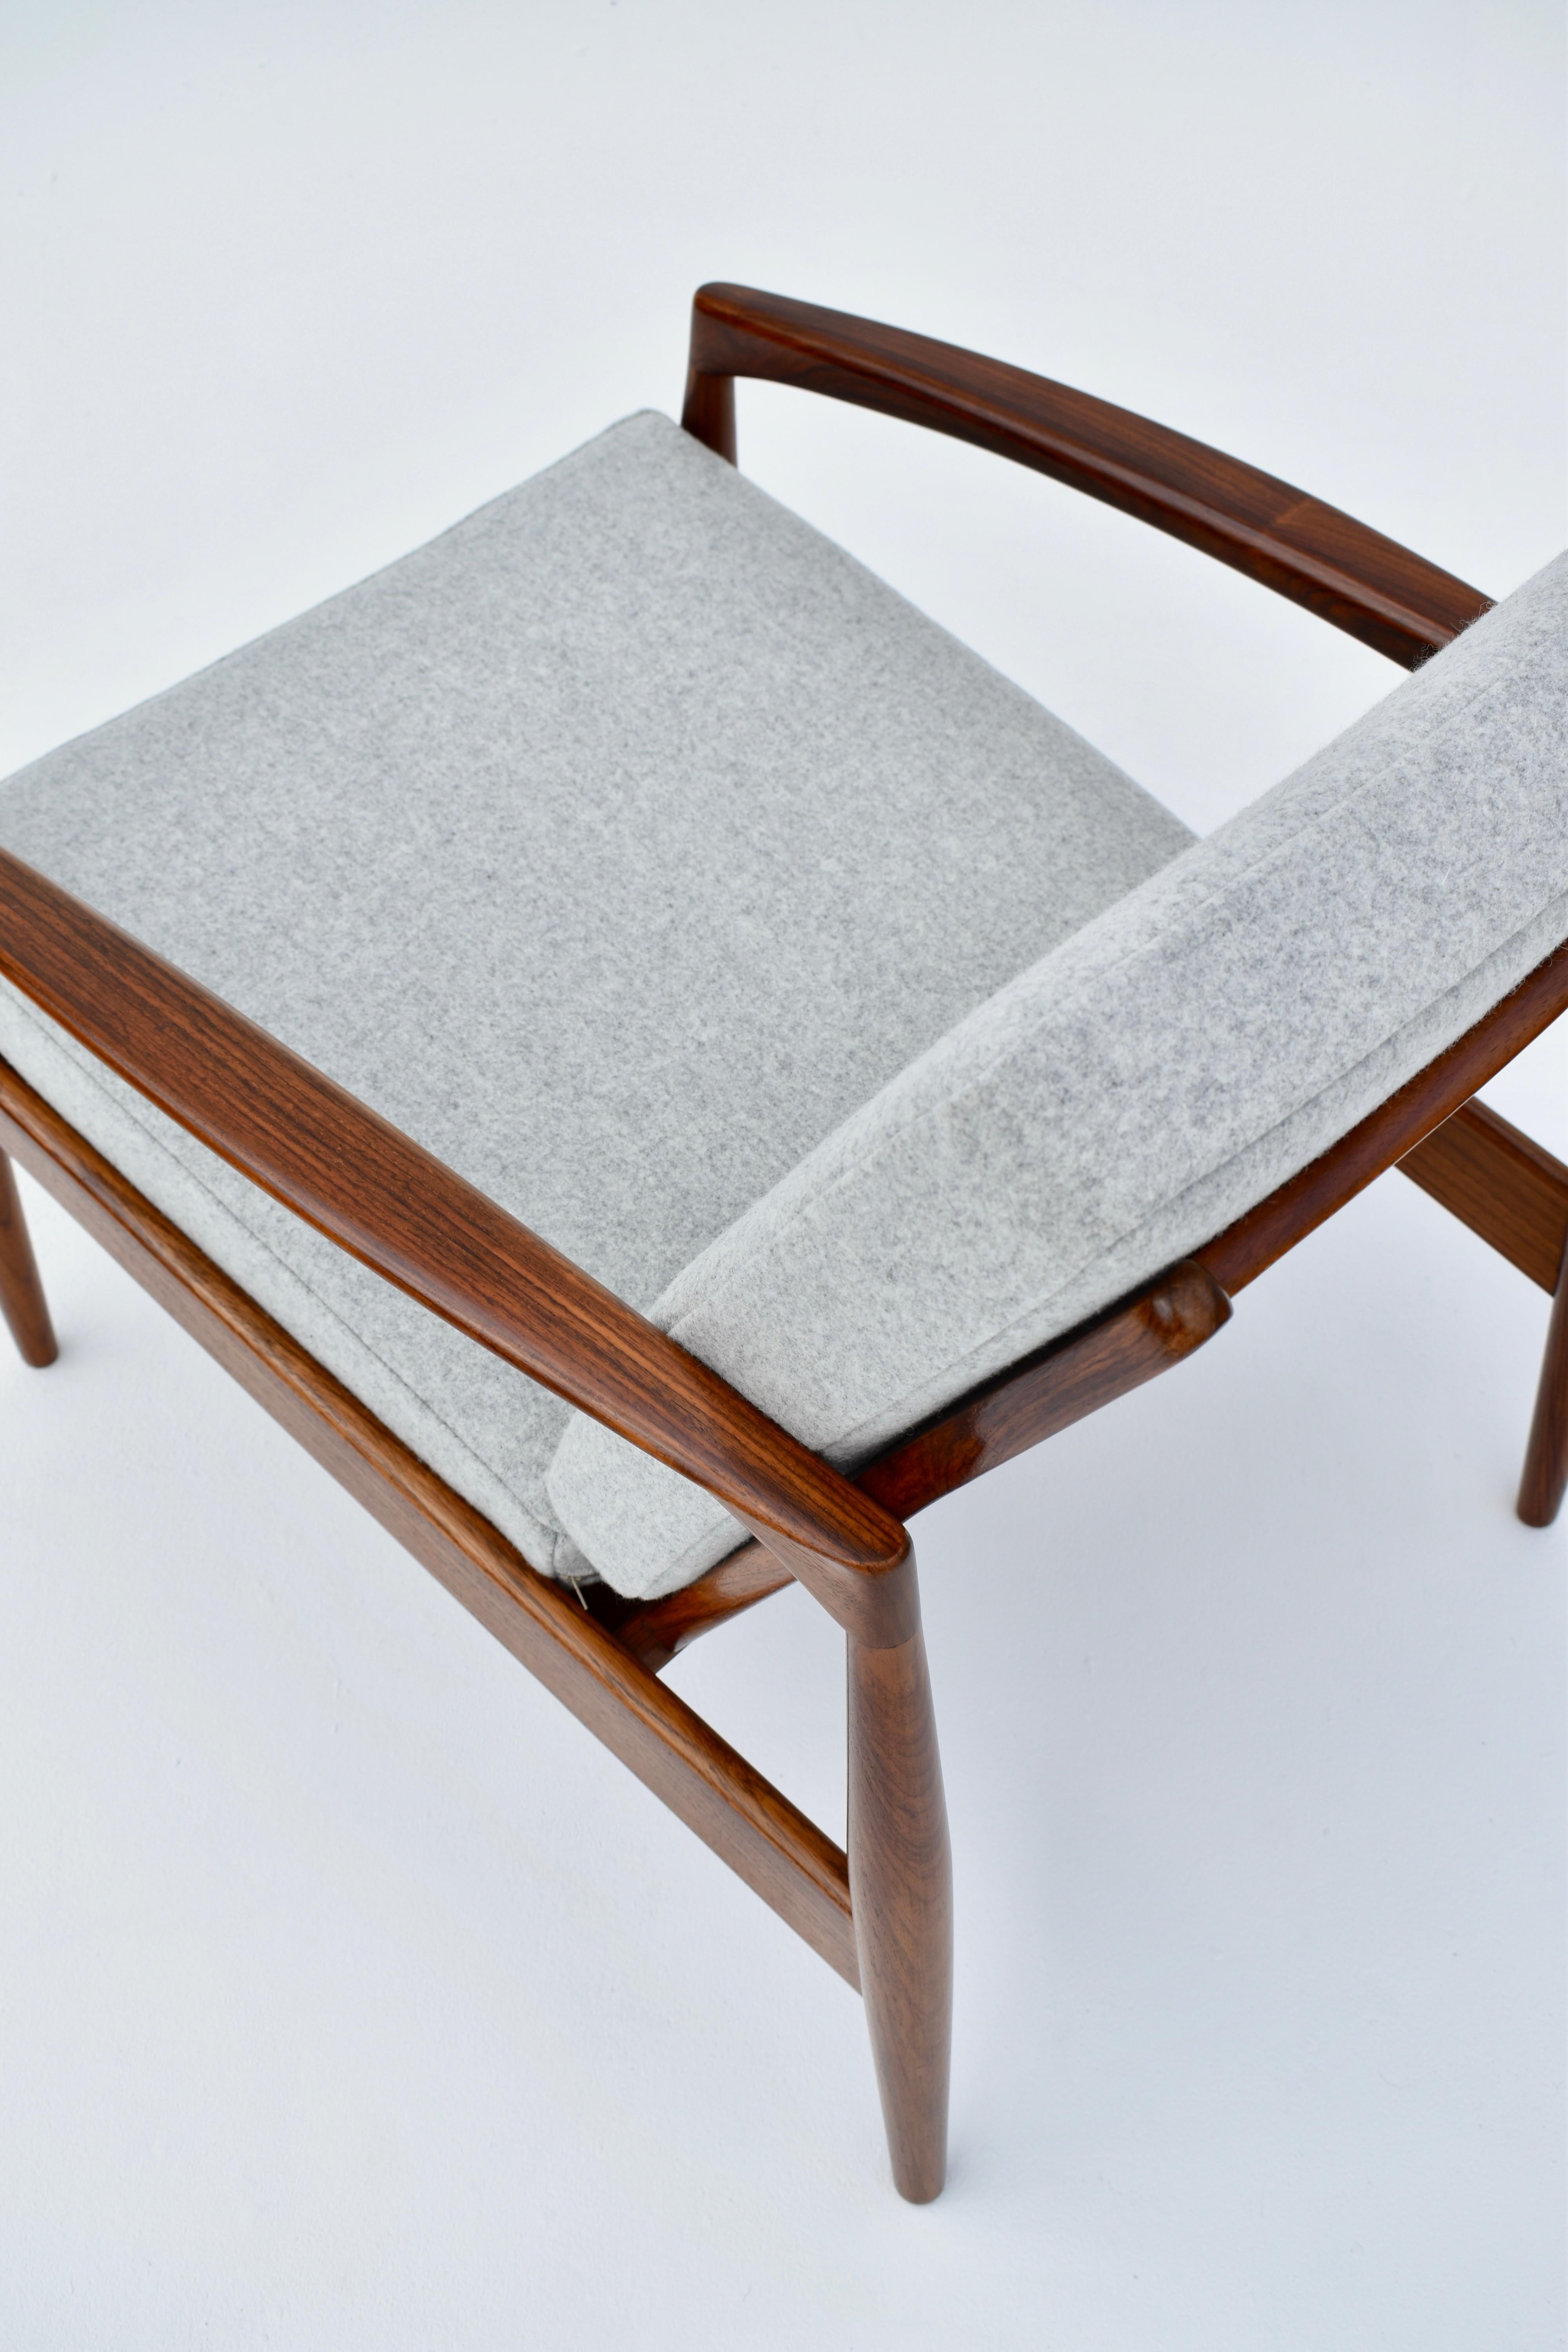 Kai Kristiansen Model 121 'Paperknife' Chair in Rosewood For Magnus Olesen 6